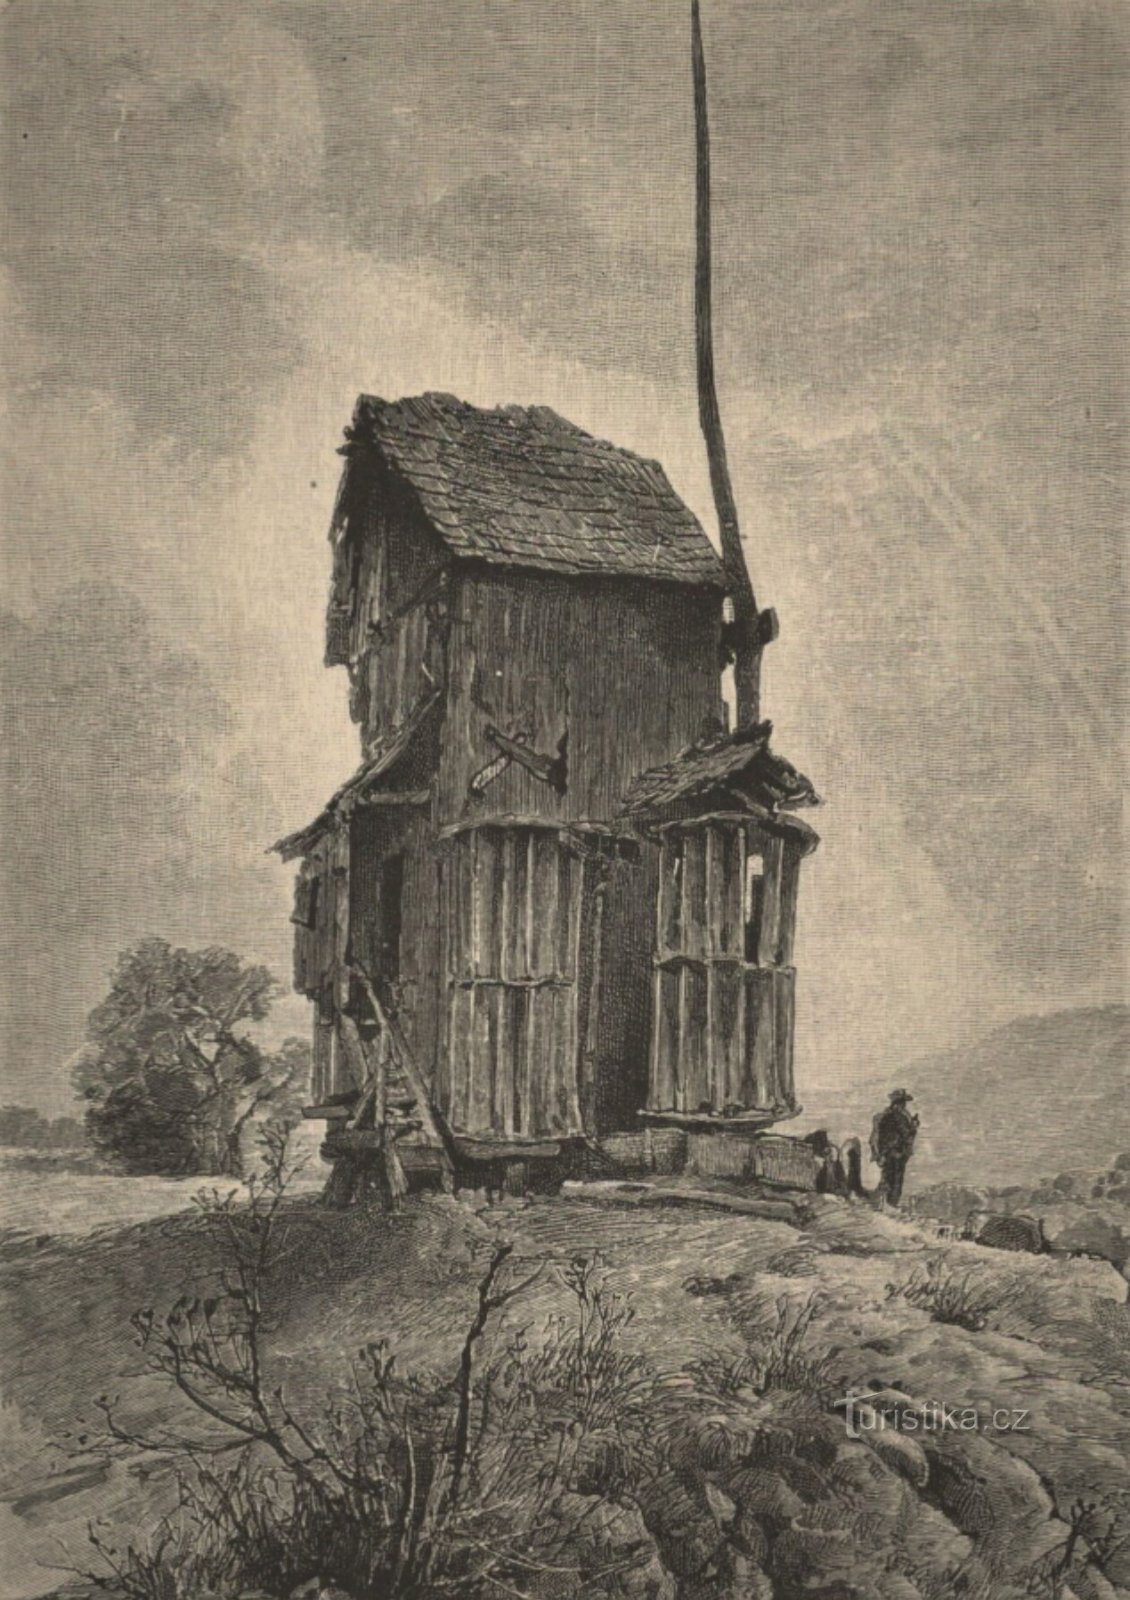 Ritning av väderkvarnen i Doblnice från andra hälften av 2-talet